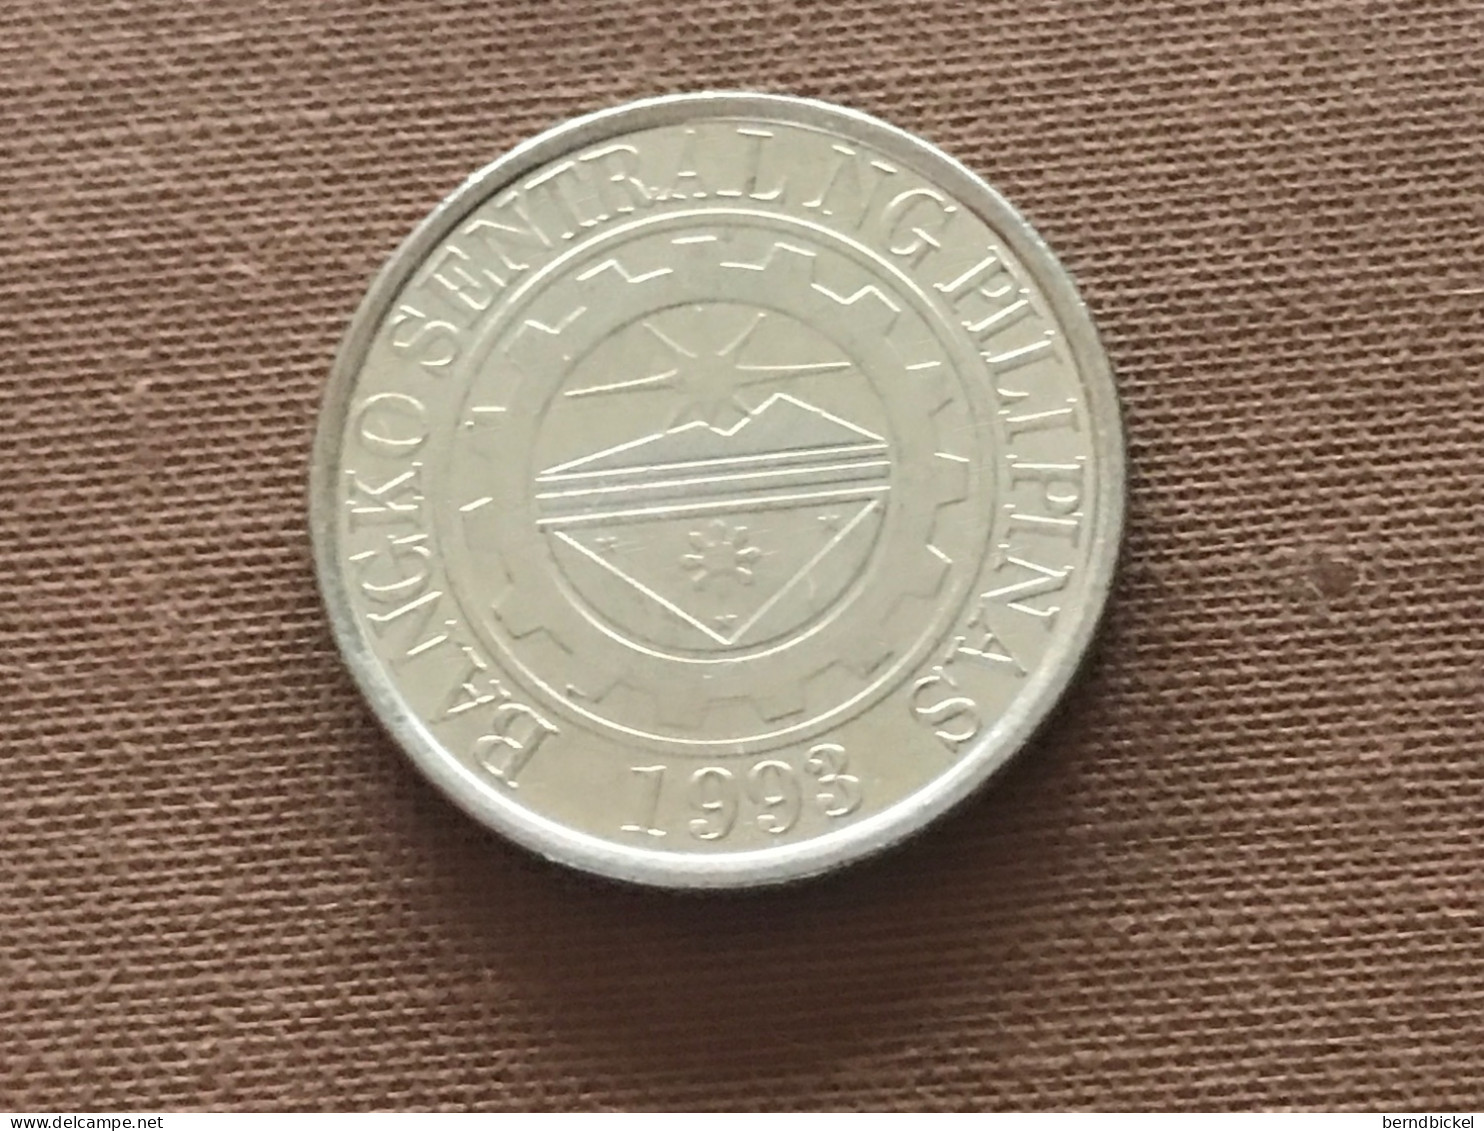 Münze Münzen Umlaufmünze Philippinen 1 Piso 2013 - Philippines